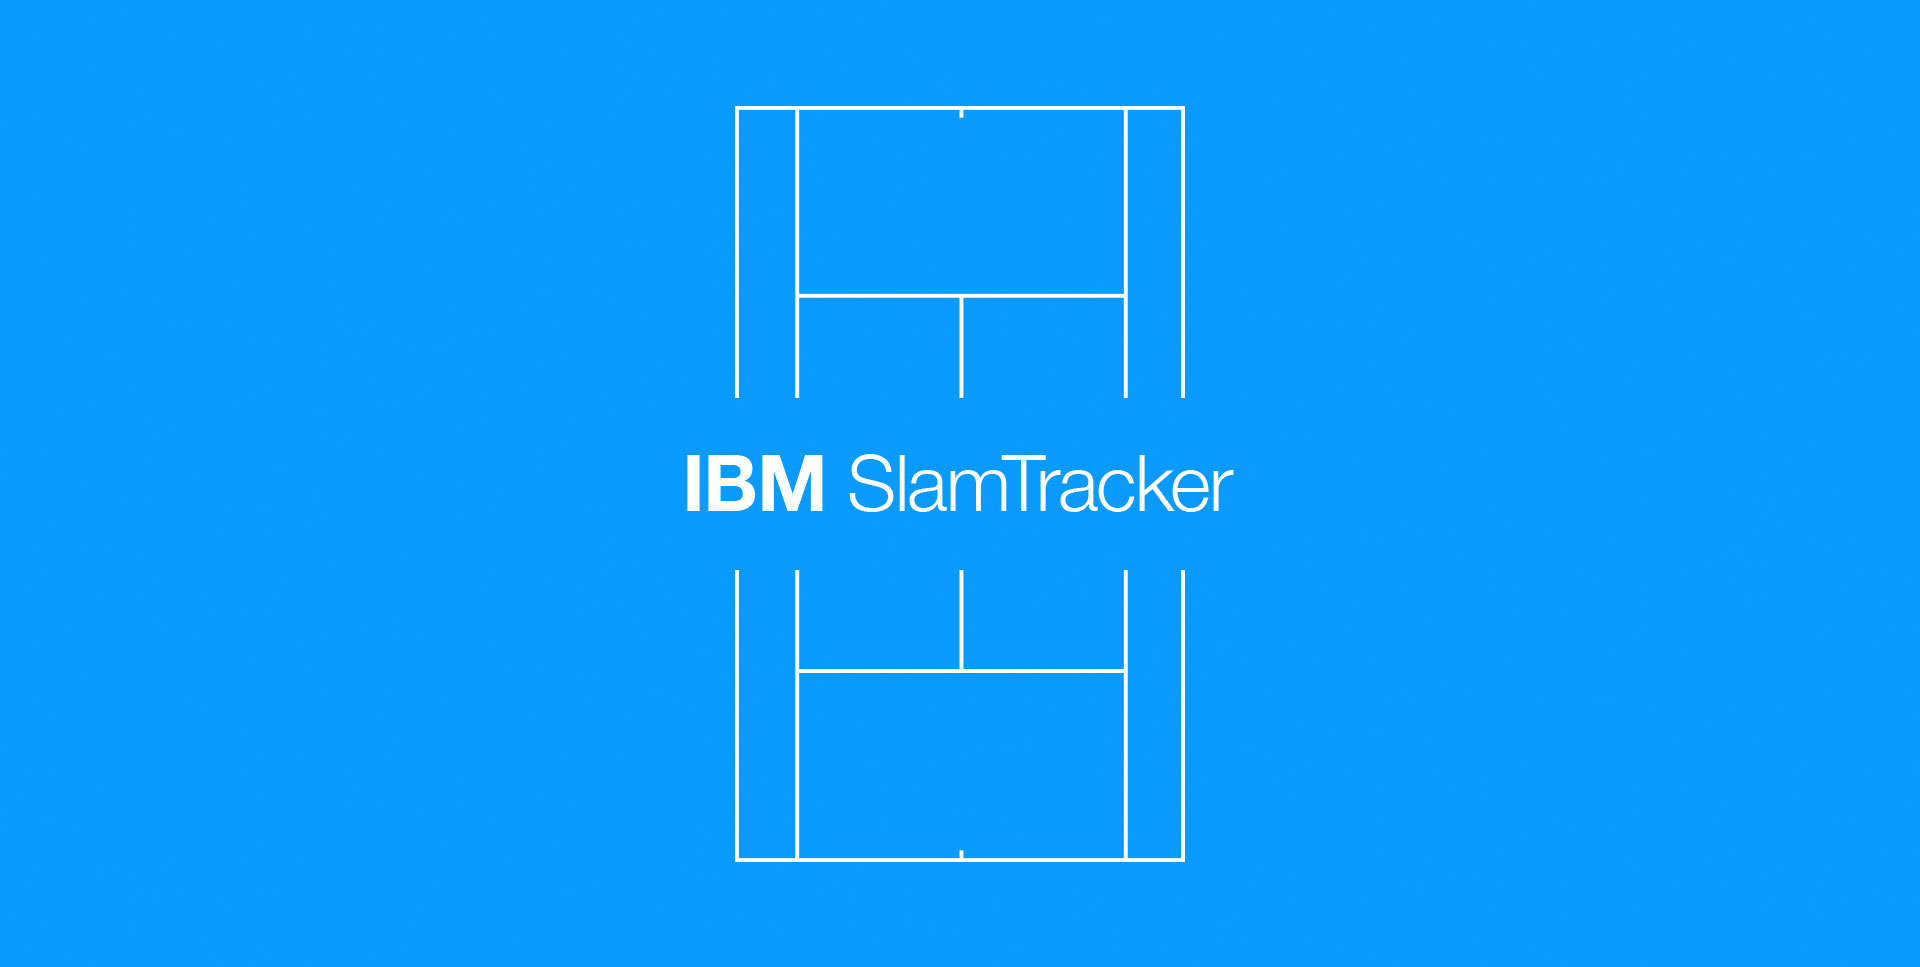 IBM Slamtracker